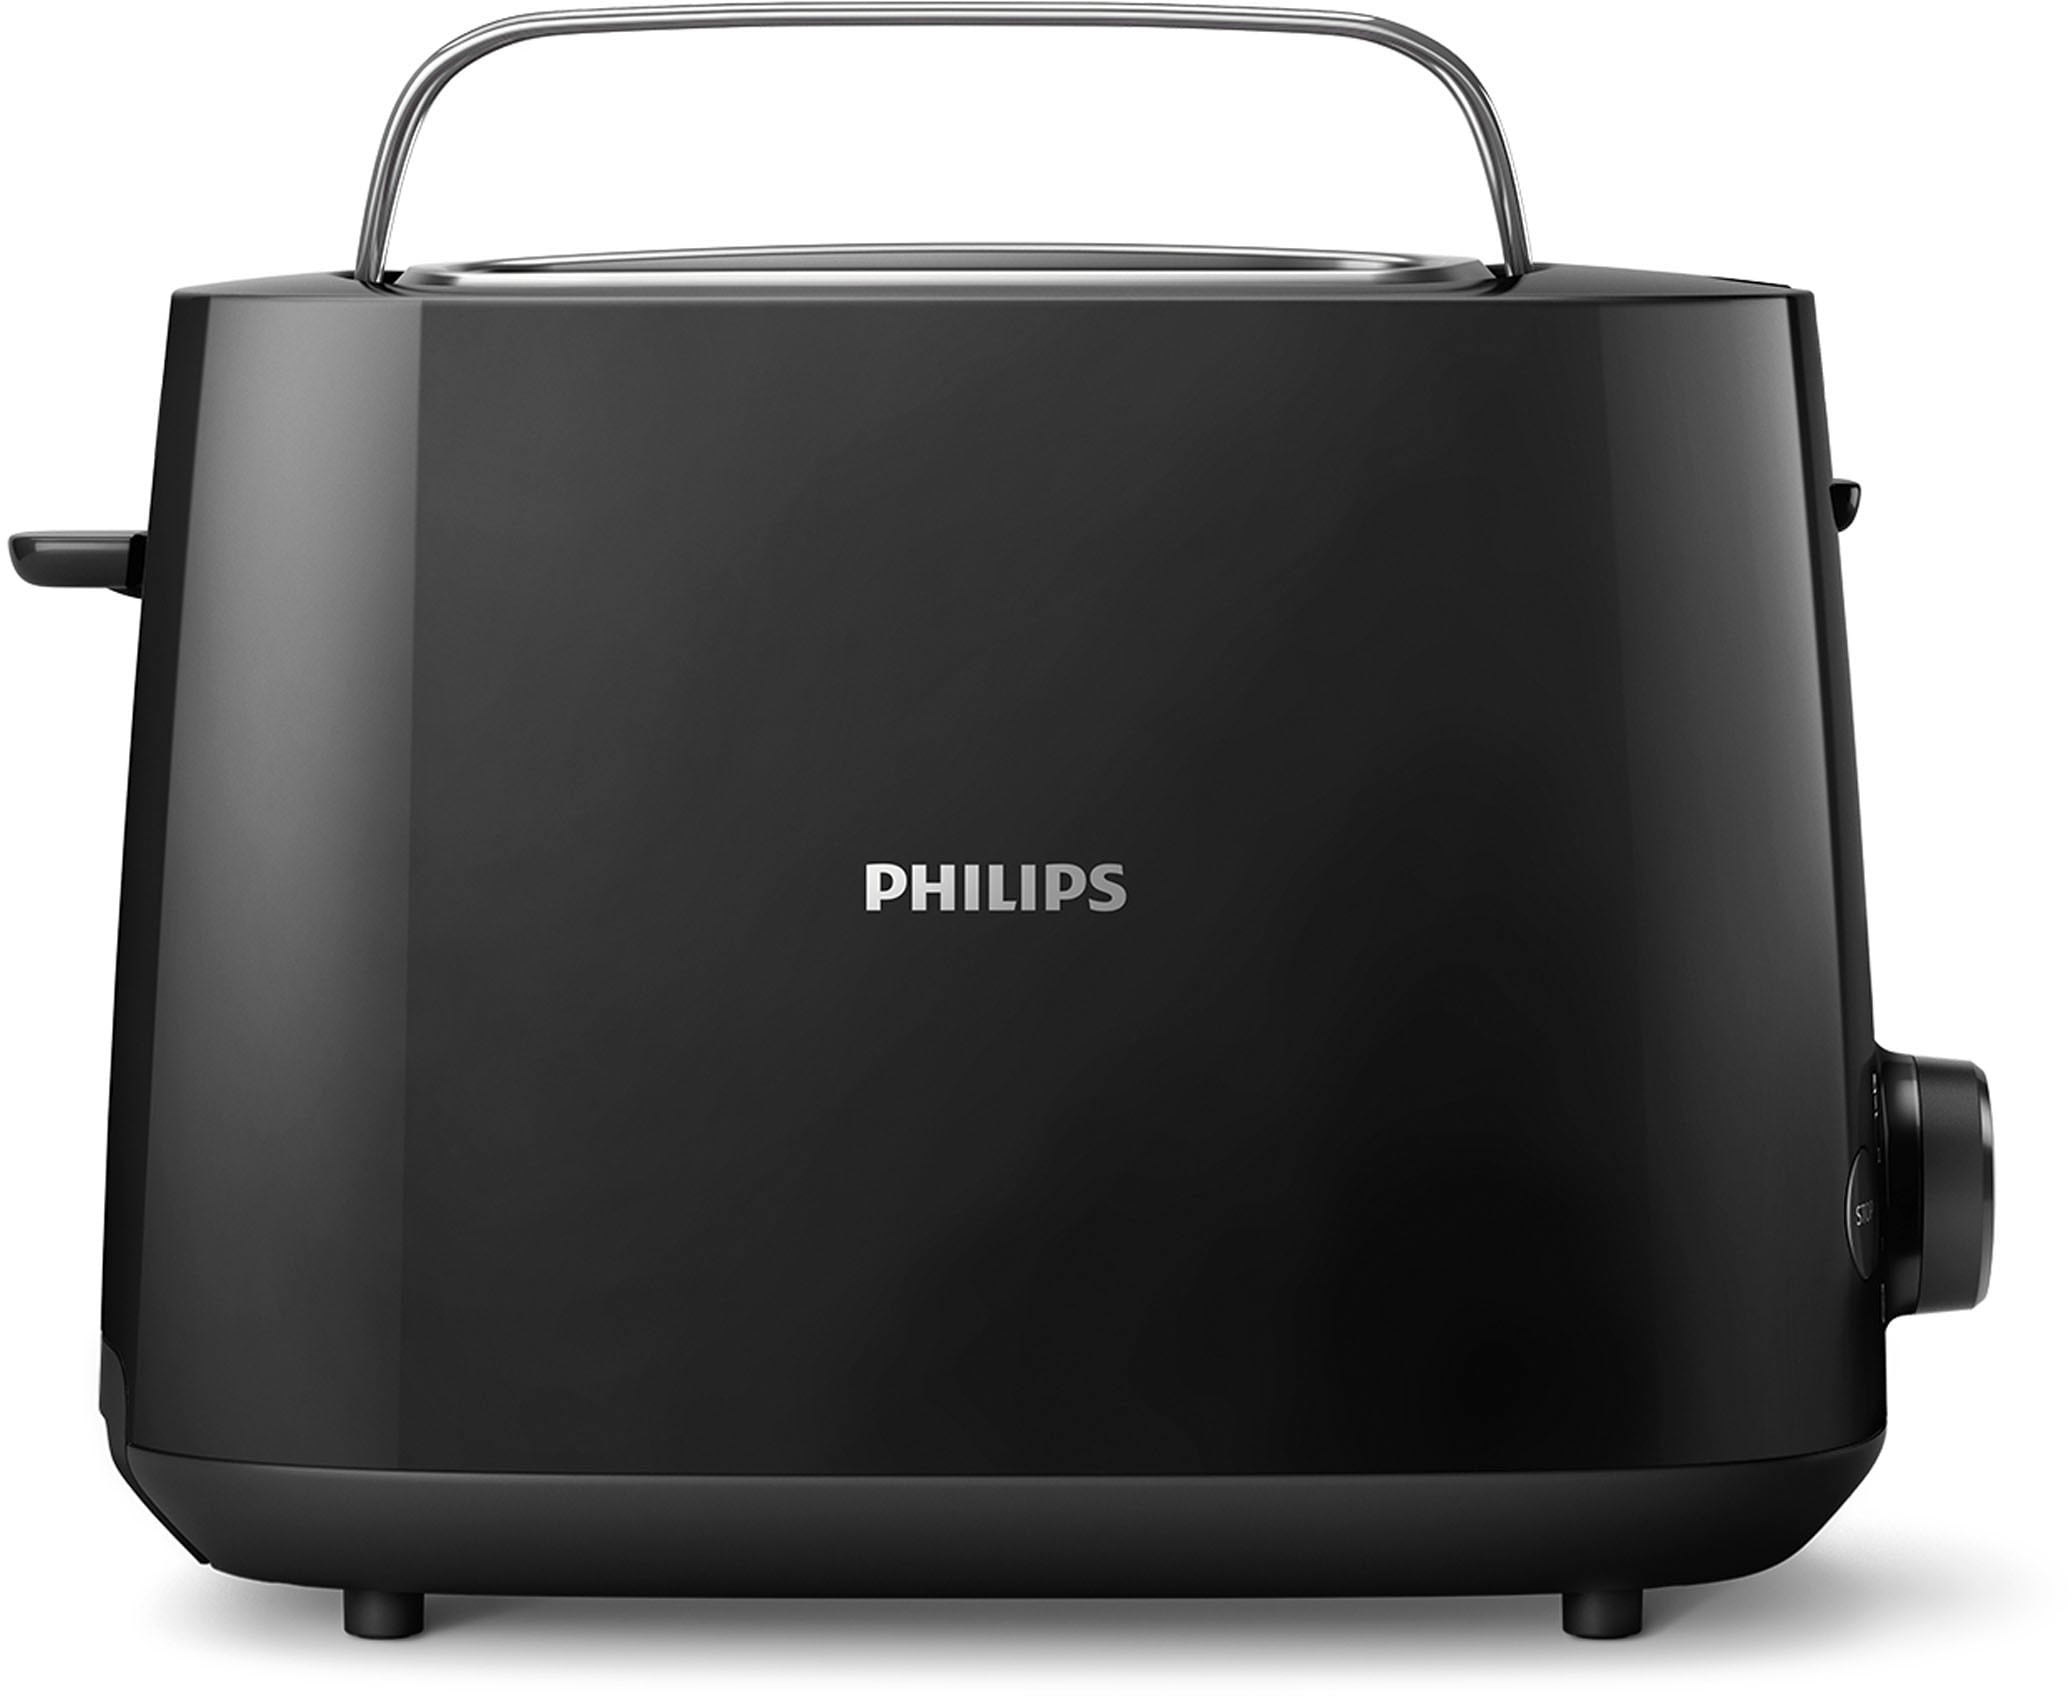 Philips Toaster »HD2581/90 Daily Collection«, 2 kurze Schlitze, 830 W,  integrierter Brötchenaufsatz, 8 Bräunungsstufen, schwarz mit 3 Jahren XXL  Garantie